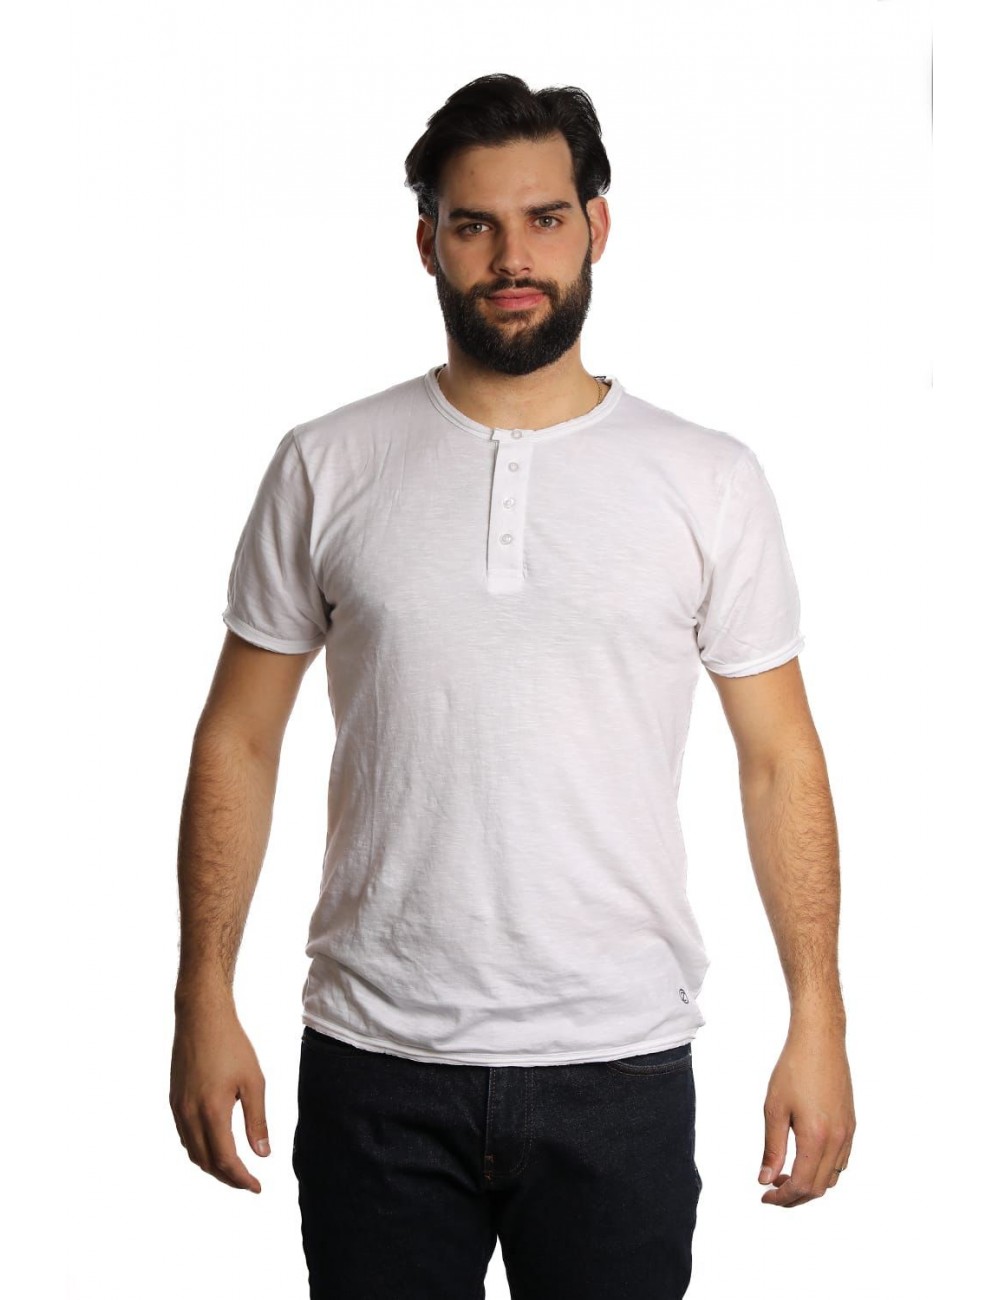 t-shirt censured UOMO OPTIC WHITE - TM 2947 T JSSG 00 vista frontale indossata